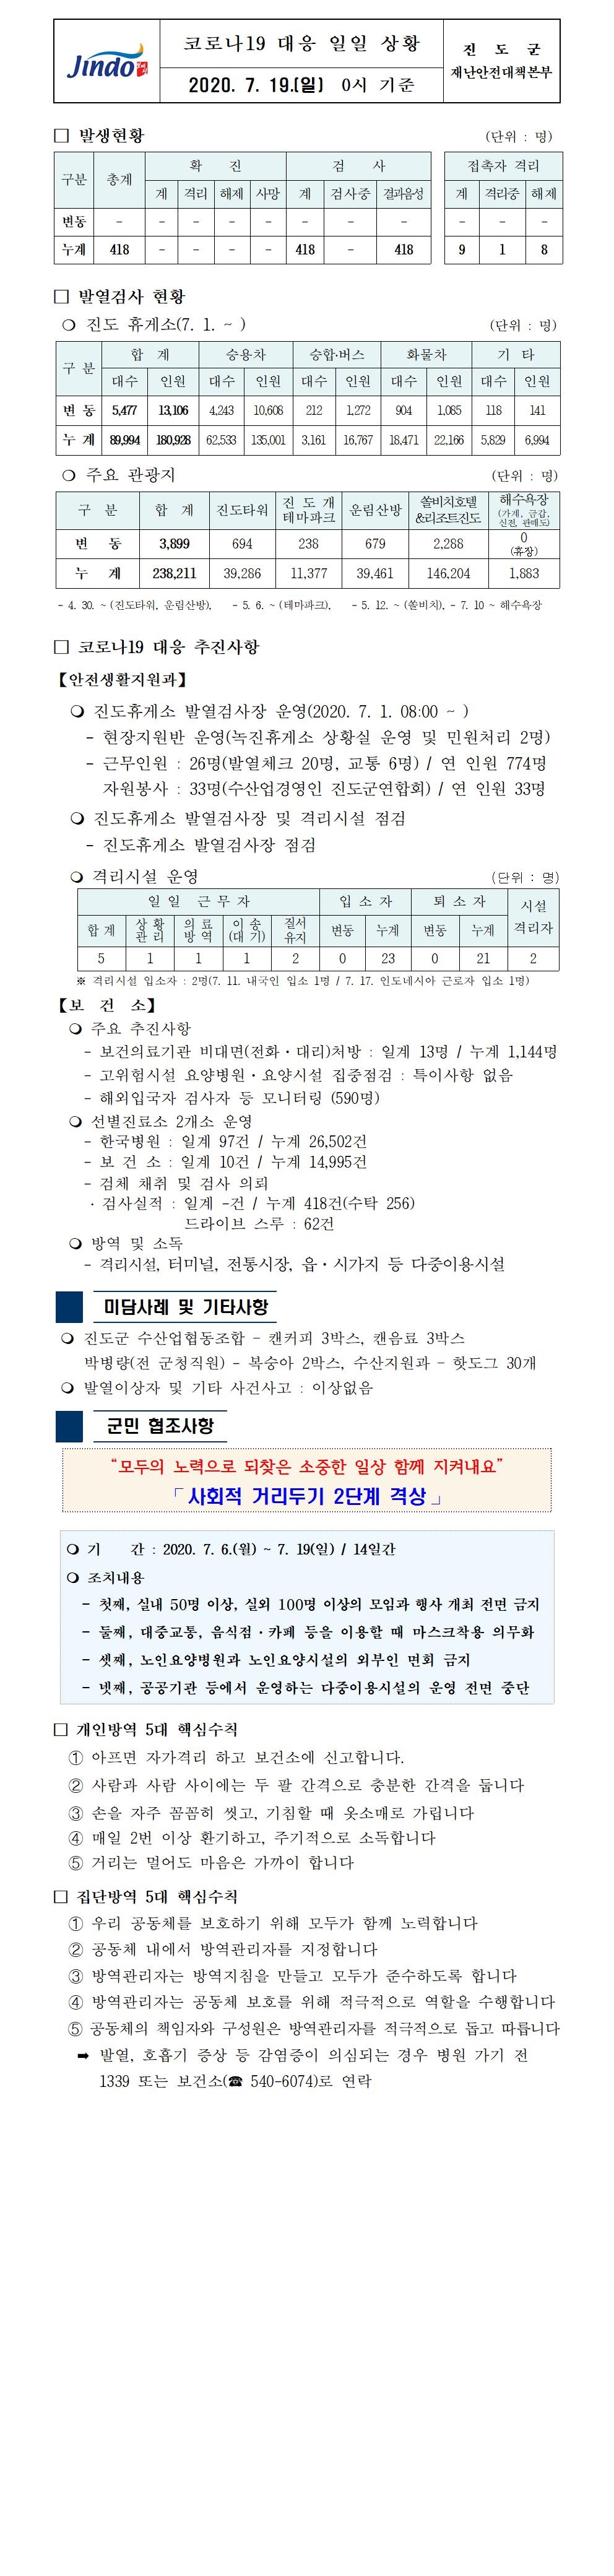 코로나19대응 일일 상황 보고(7월 19일 0시 기준) 첨부#1